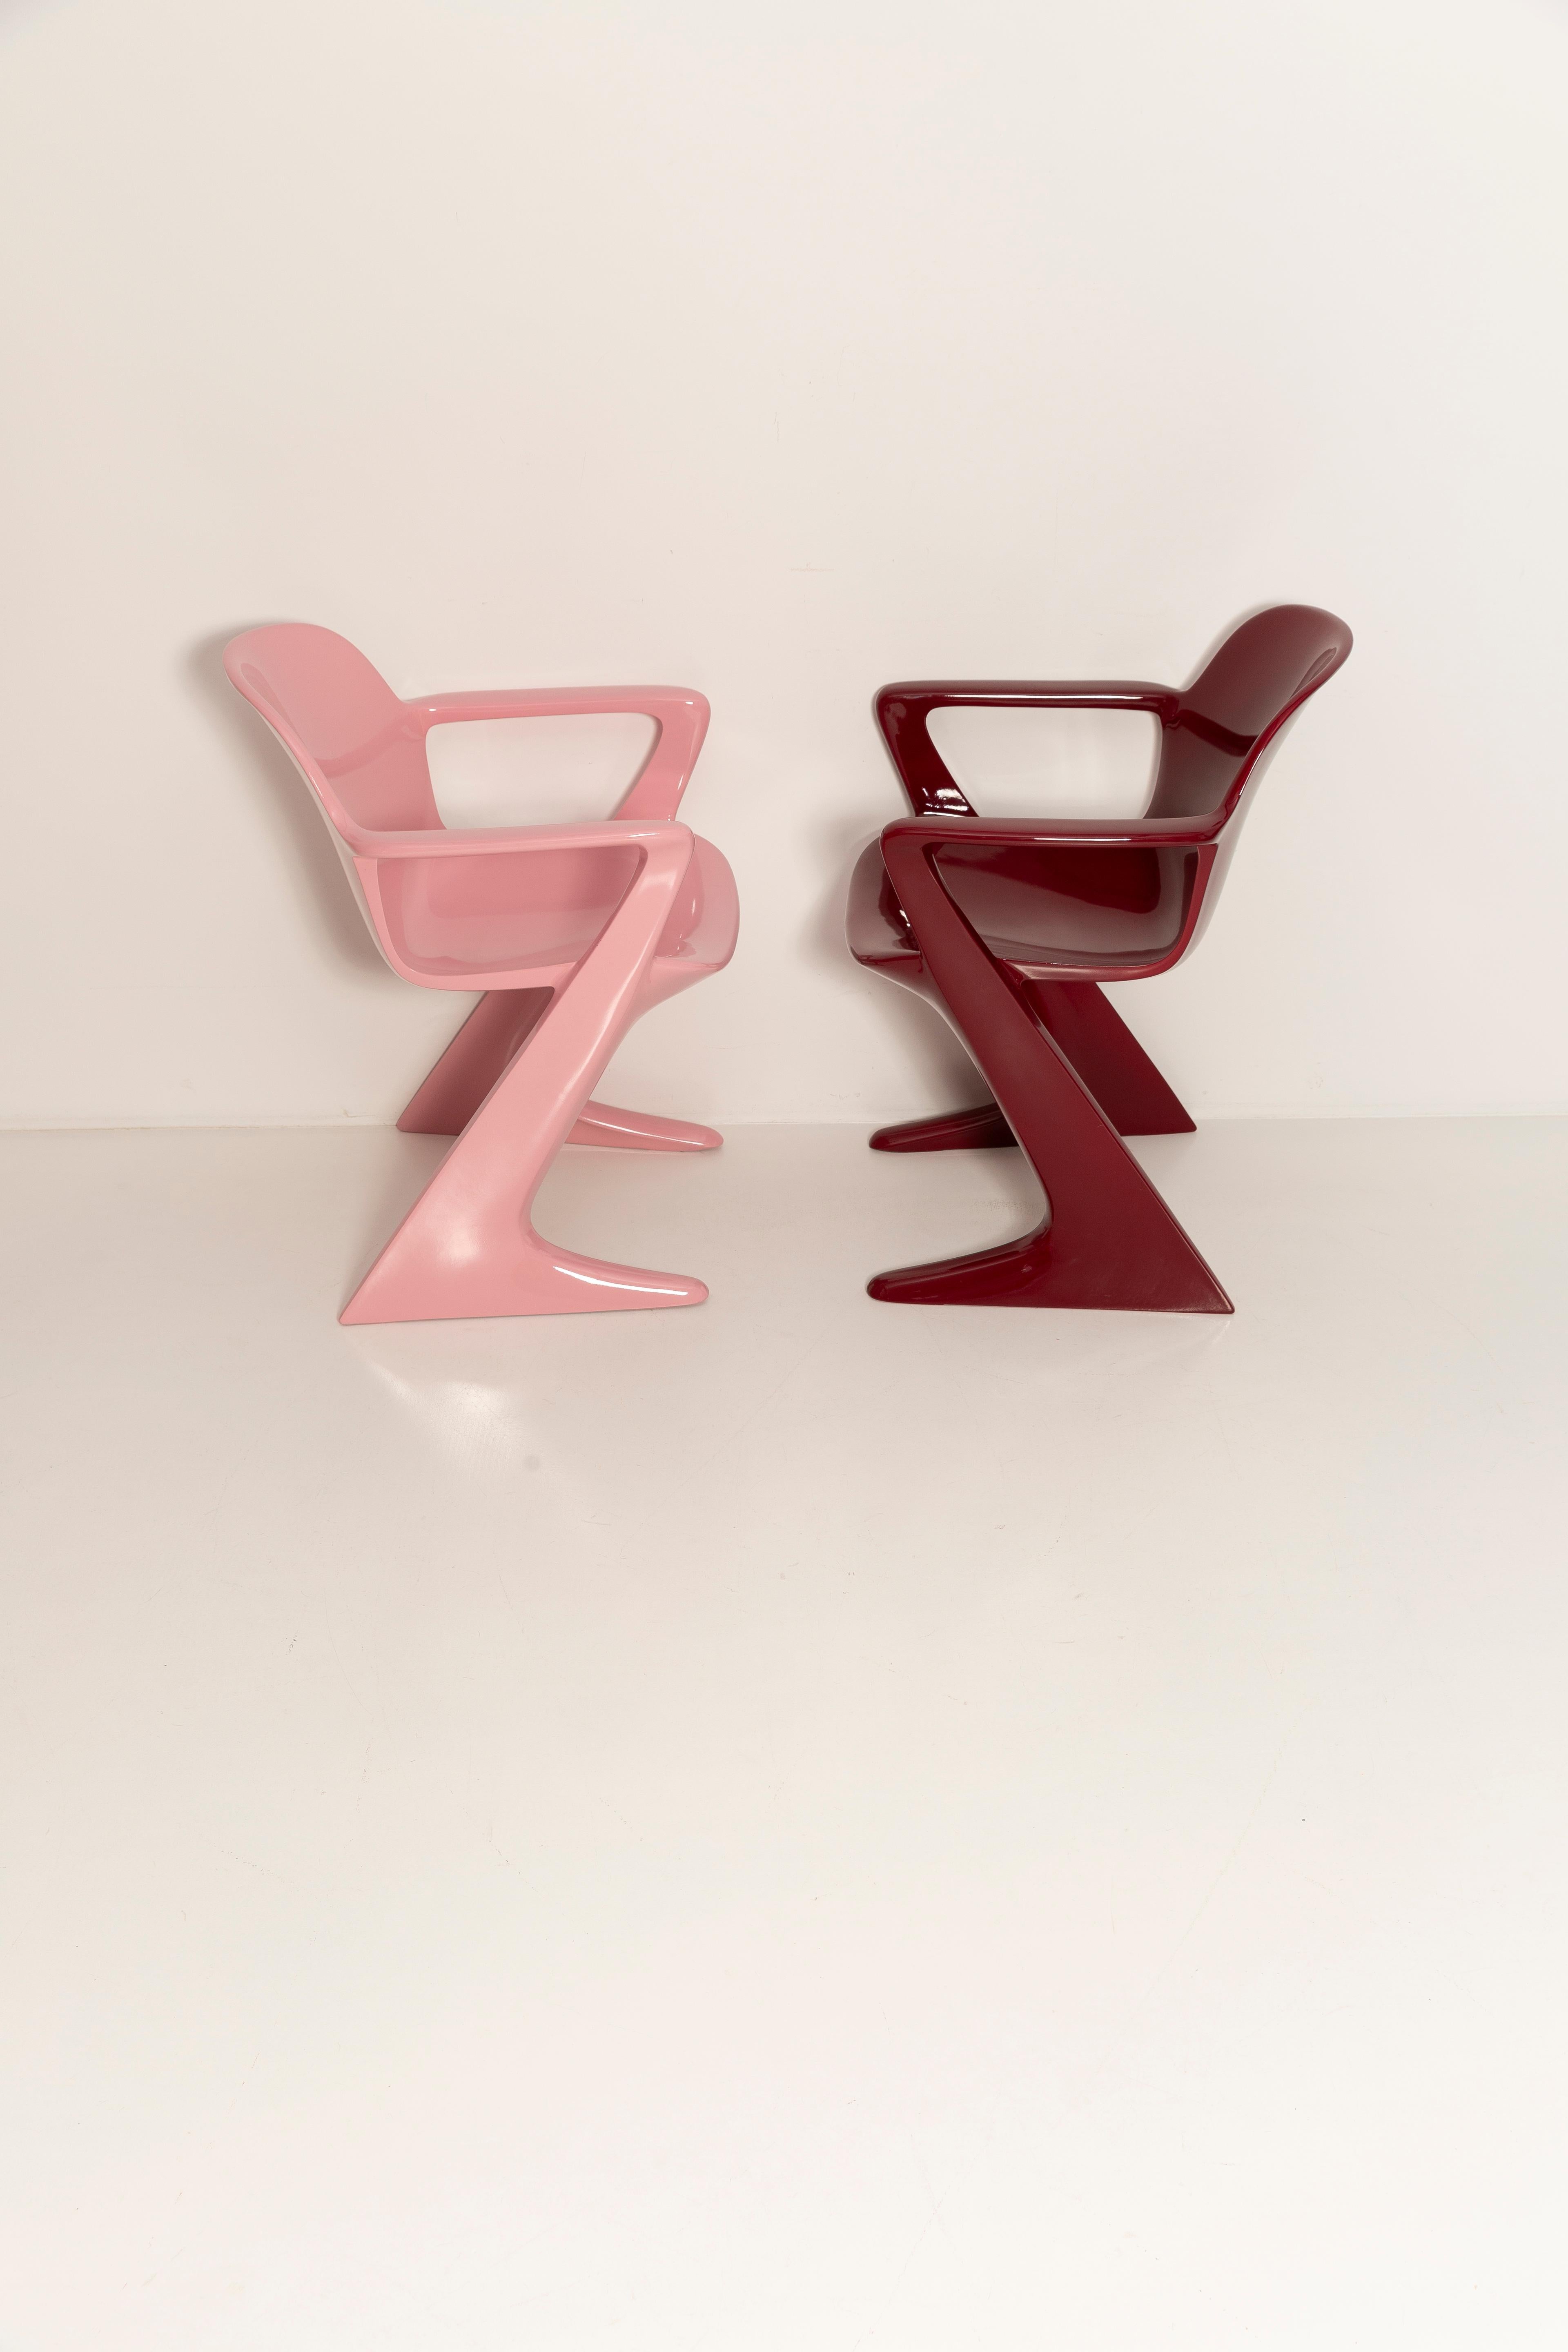 La chaise z.stuhl, conçue par Ernst Moeckl (1931-2013) dans les années 1970, est une chaise cantilever en polyuréthane, disponible avec ou sans accoudoirs. Dans la langue vernaculaire, la chaise est connue sous des noms géométriques tels que 